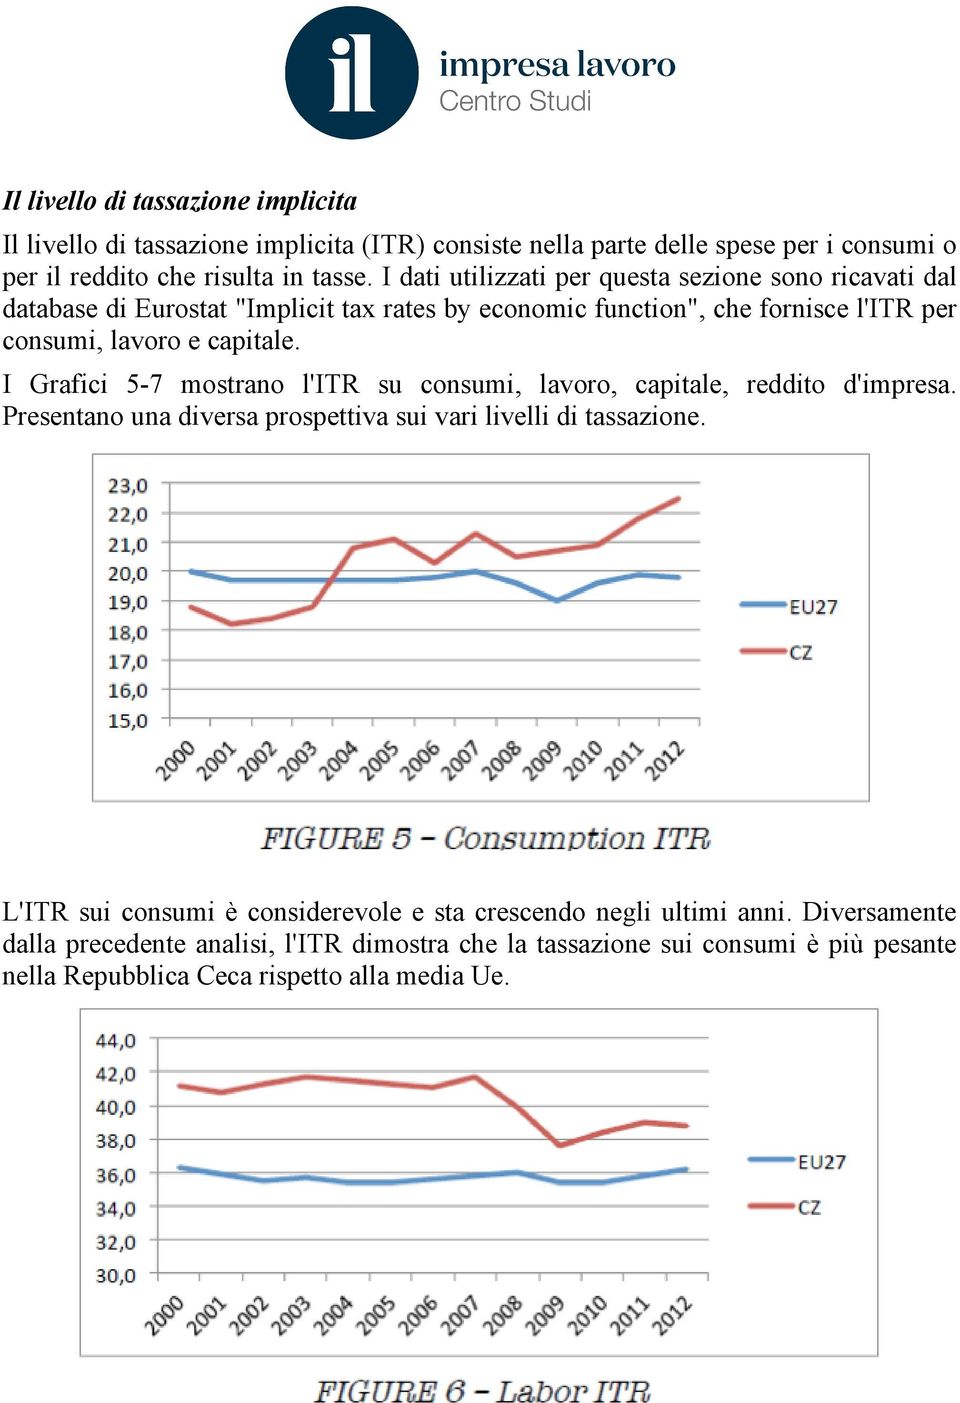 I Grafici 5-7 mostrano l'itr su consumi, lavoro, capitale, reddito d'impresa. Presentano una diversa prospettiva sui vari livelli di tassazione.